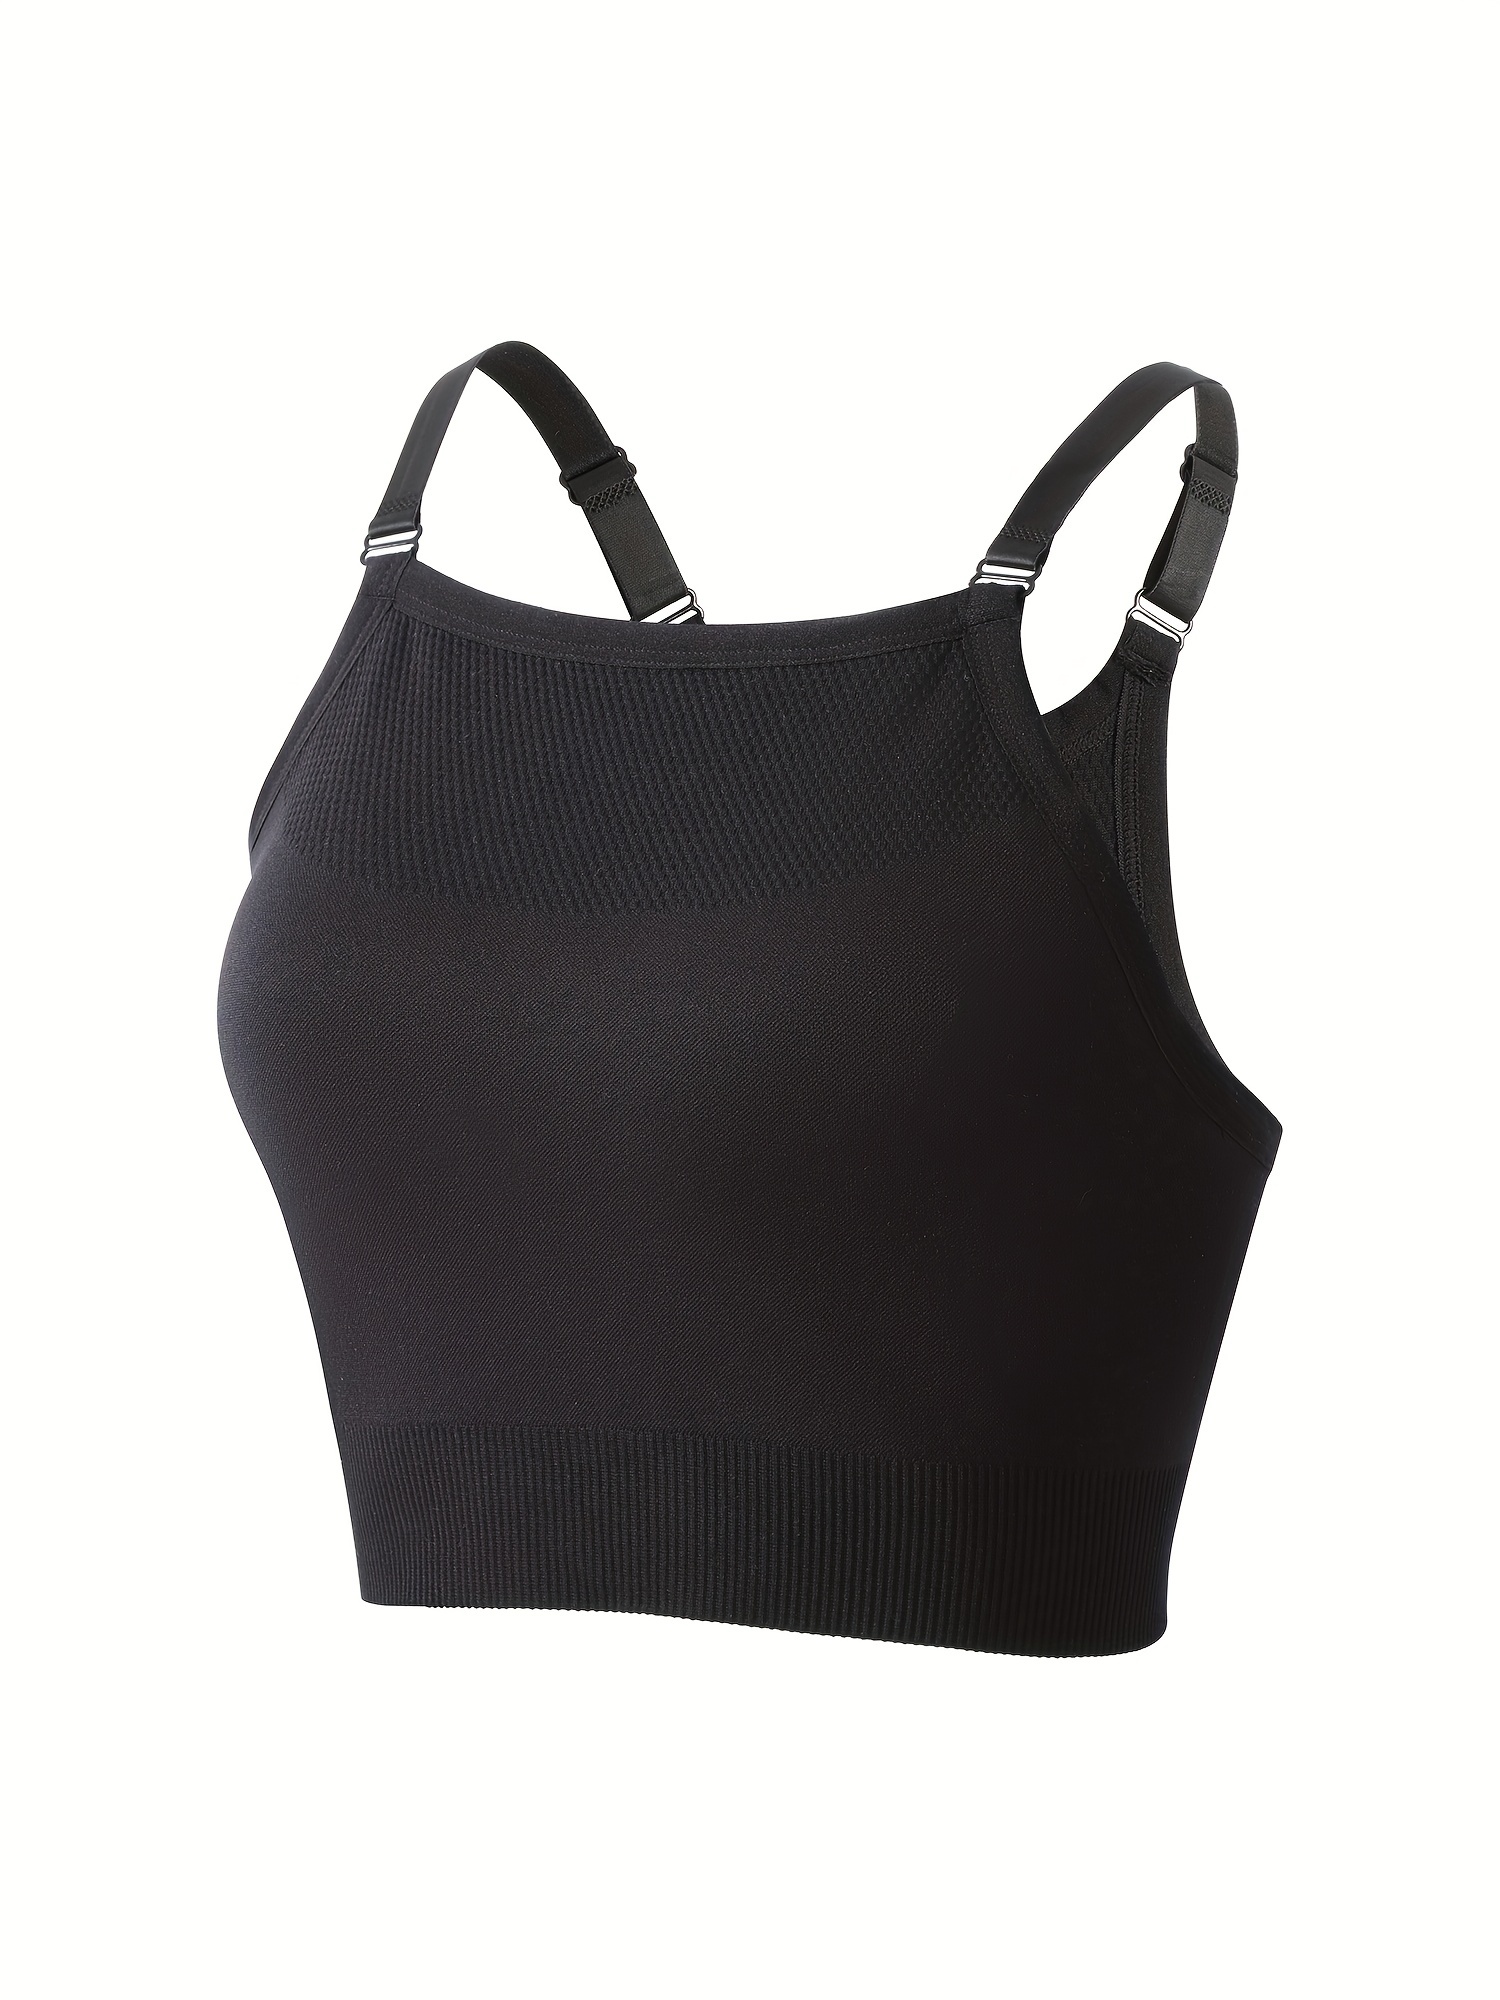 Coobie Womens Plus Size Black Solid Racerback Fusion Yoga Bra Size Full Sz  for sale online